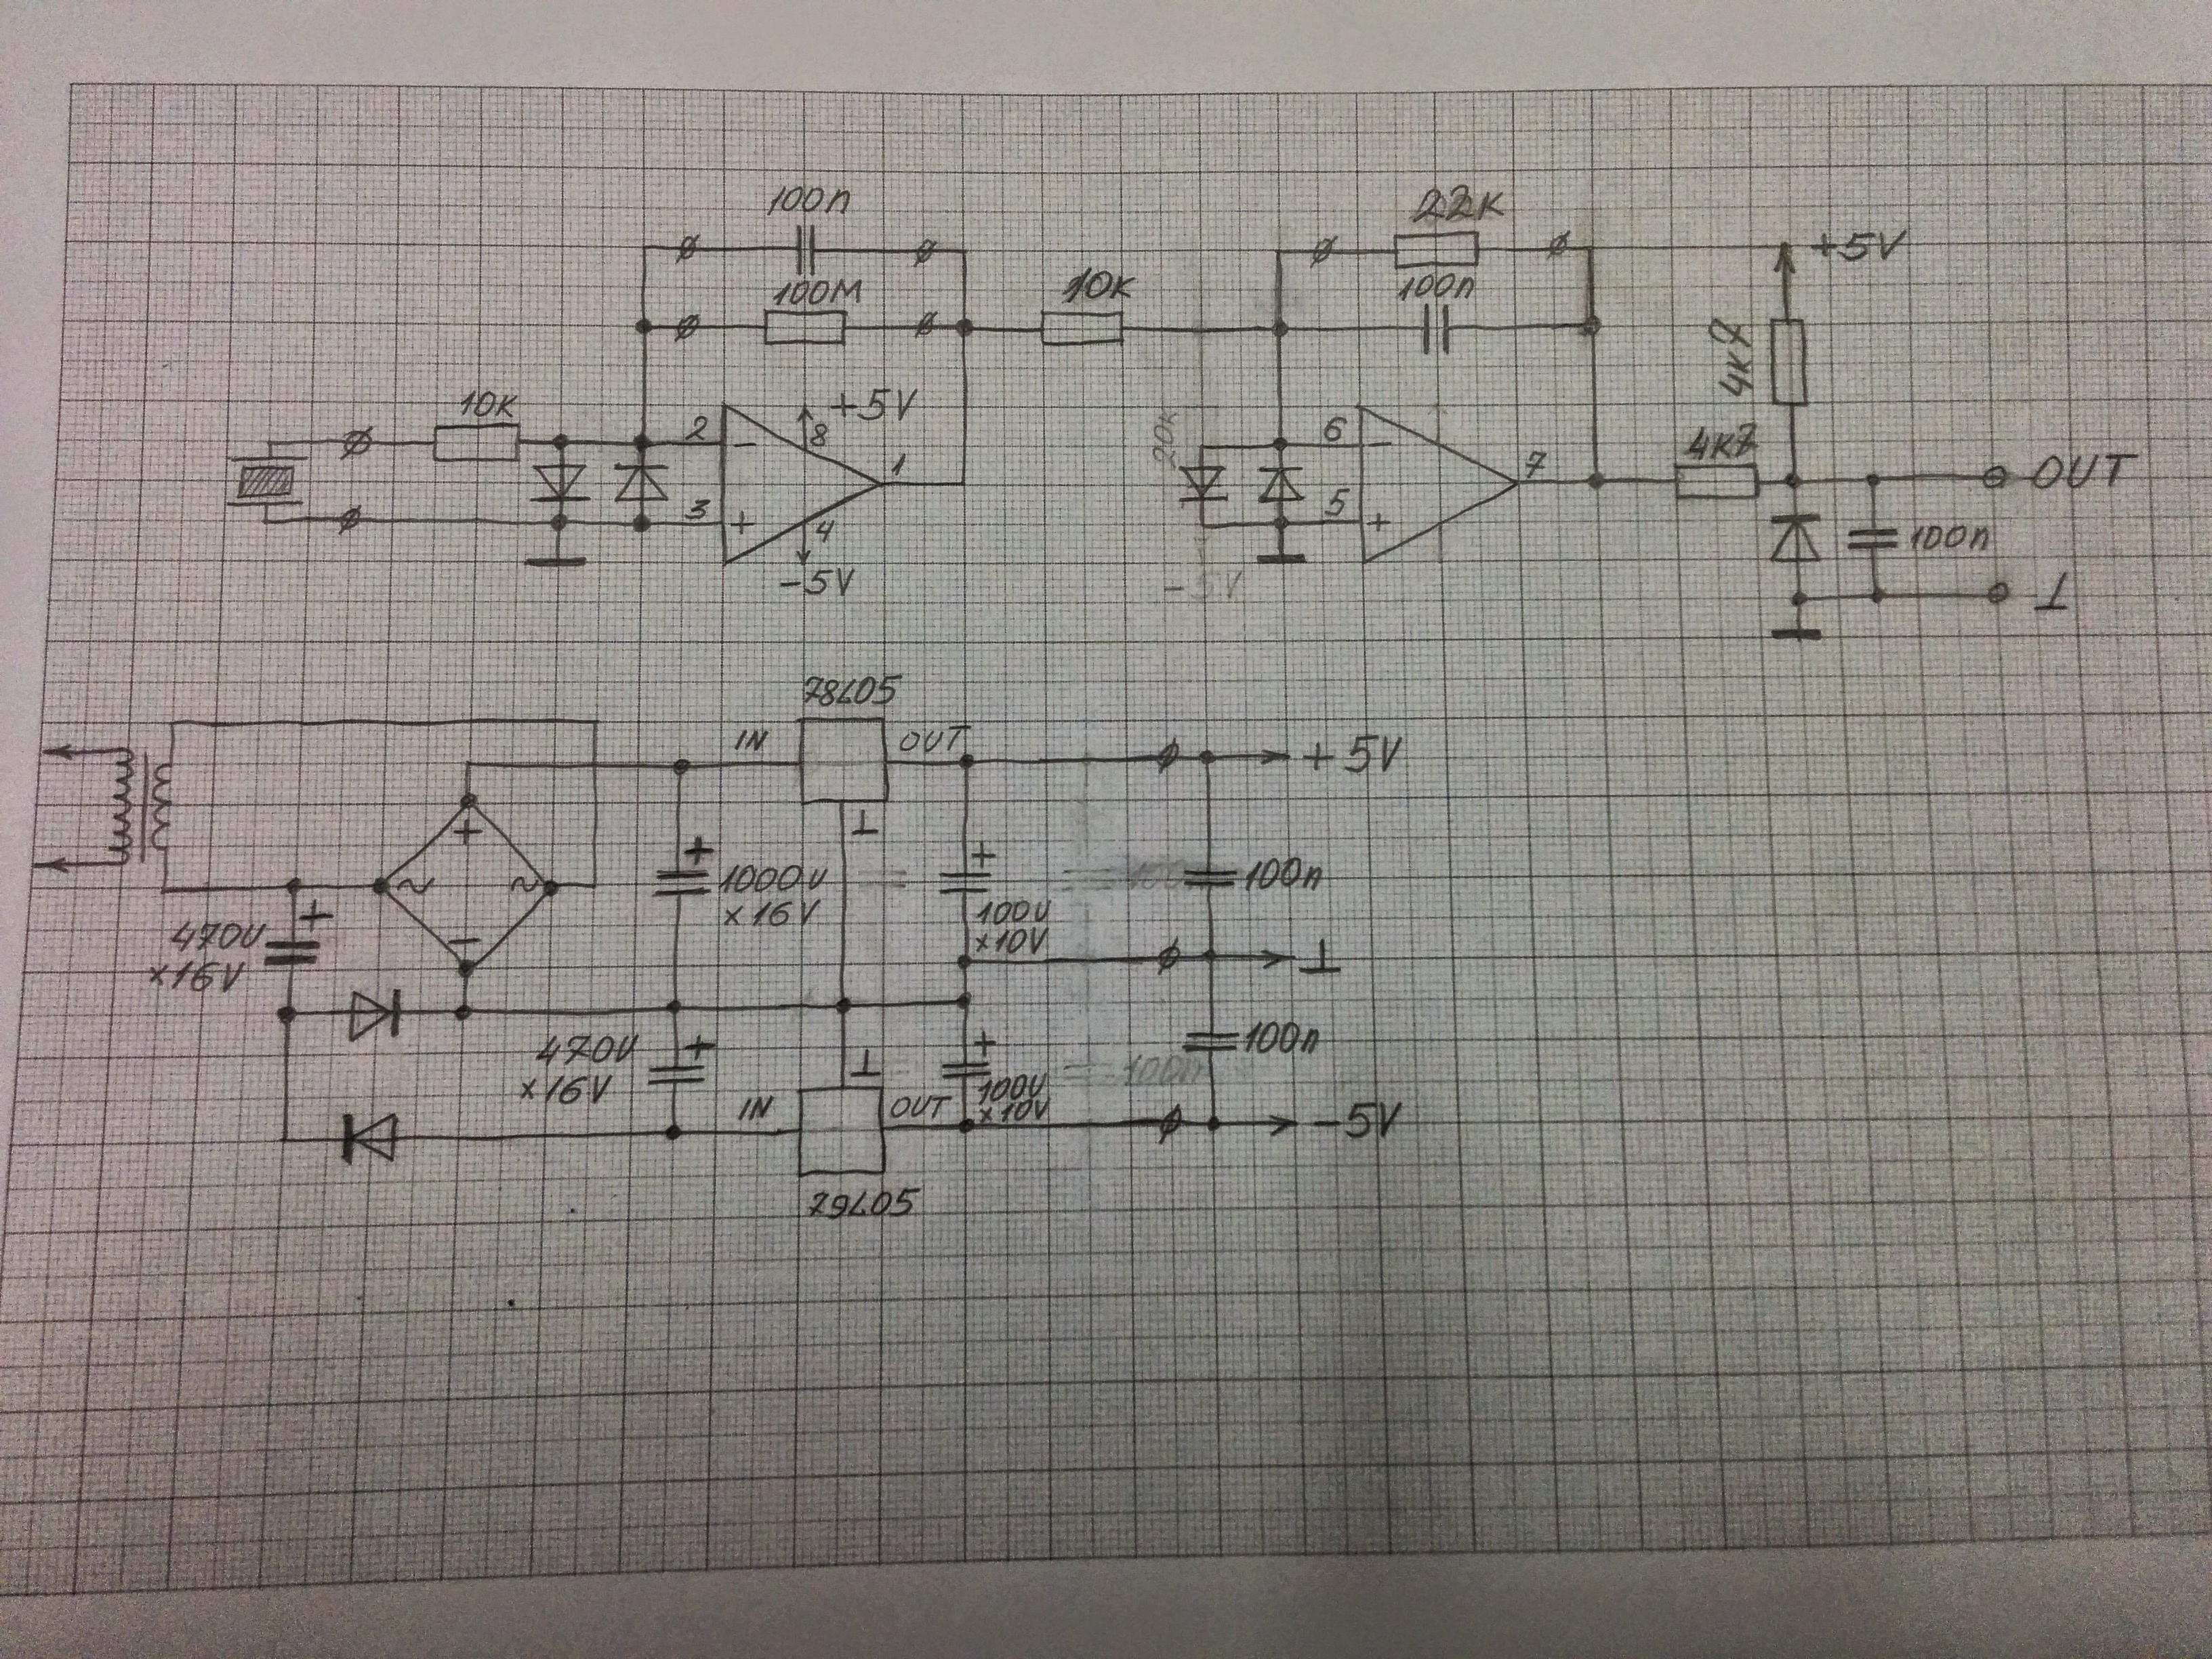 Circuitschema.jpg